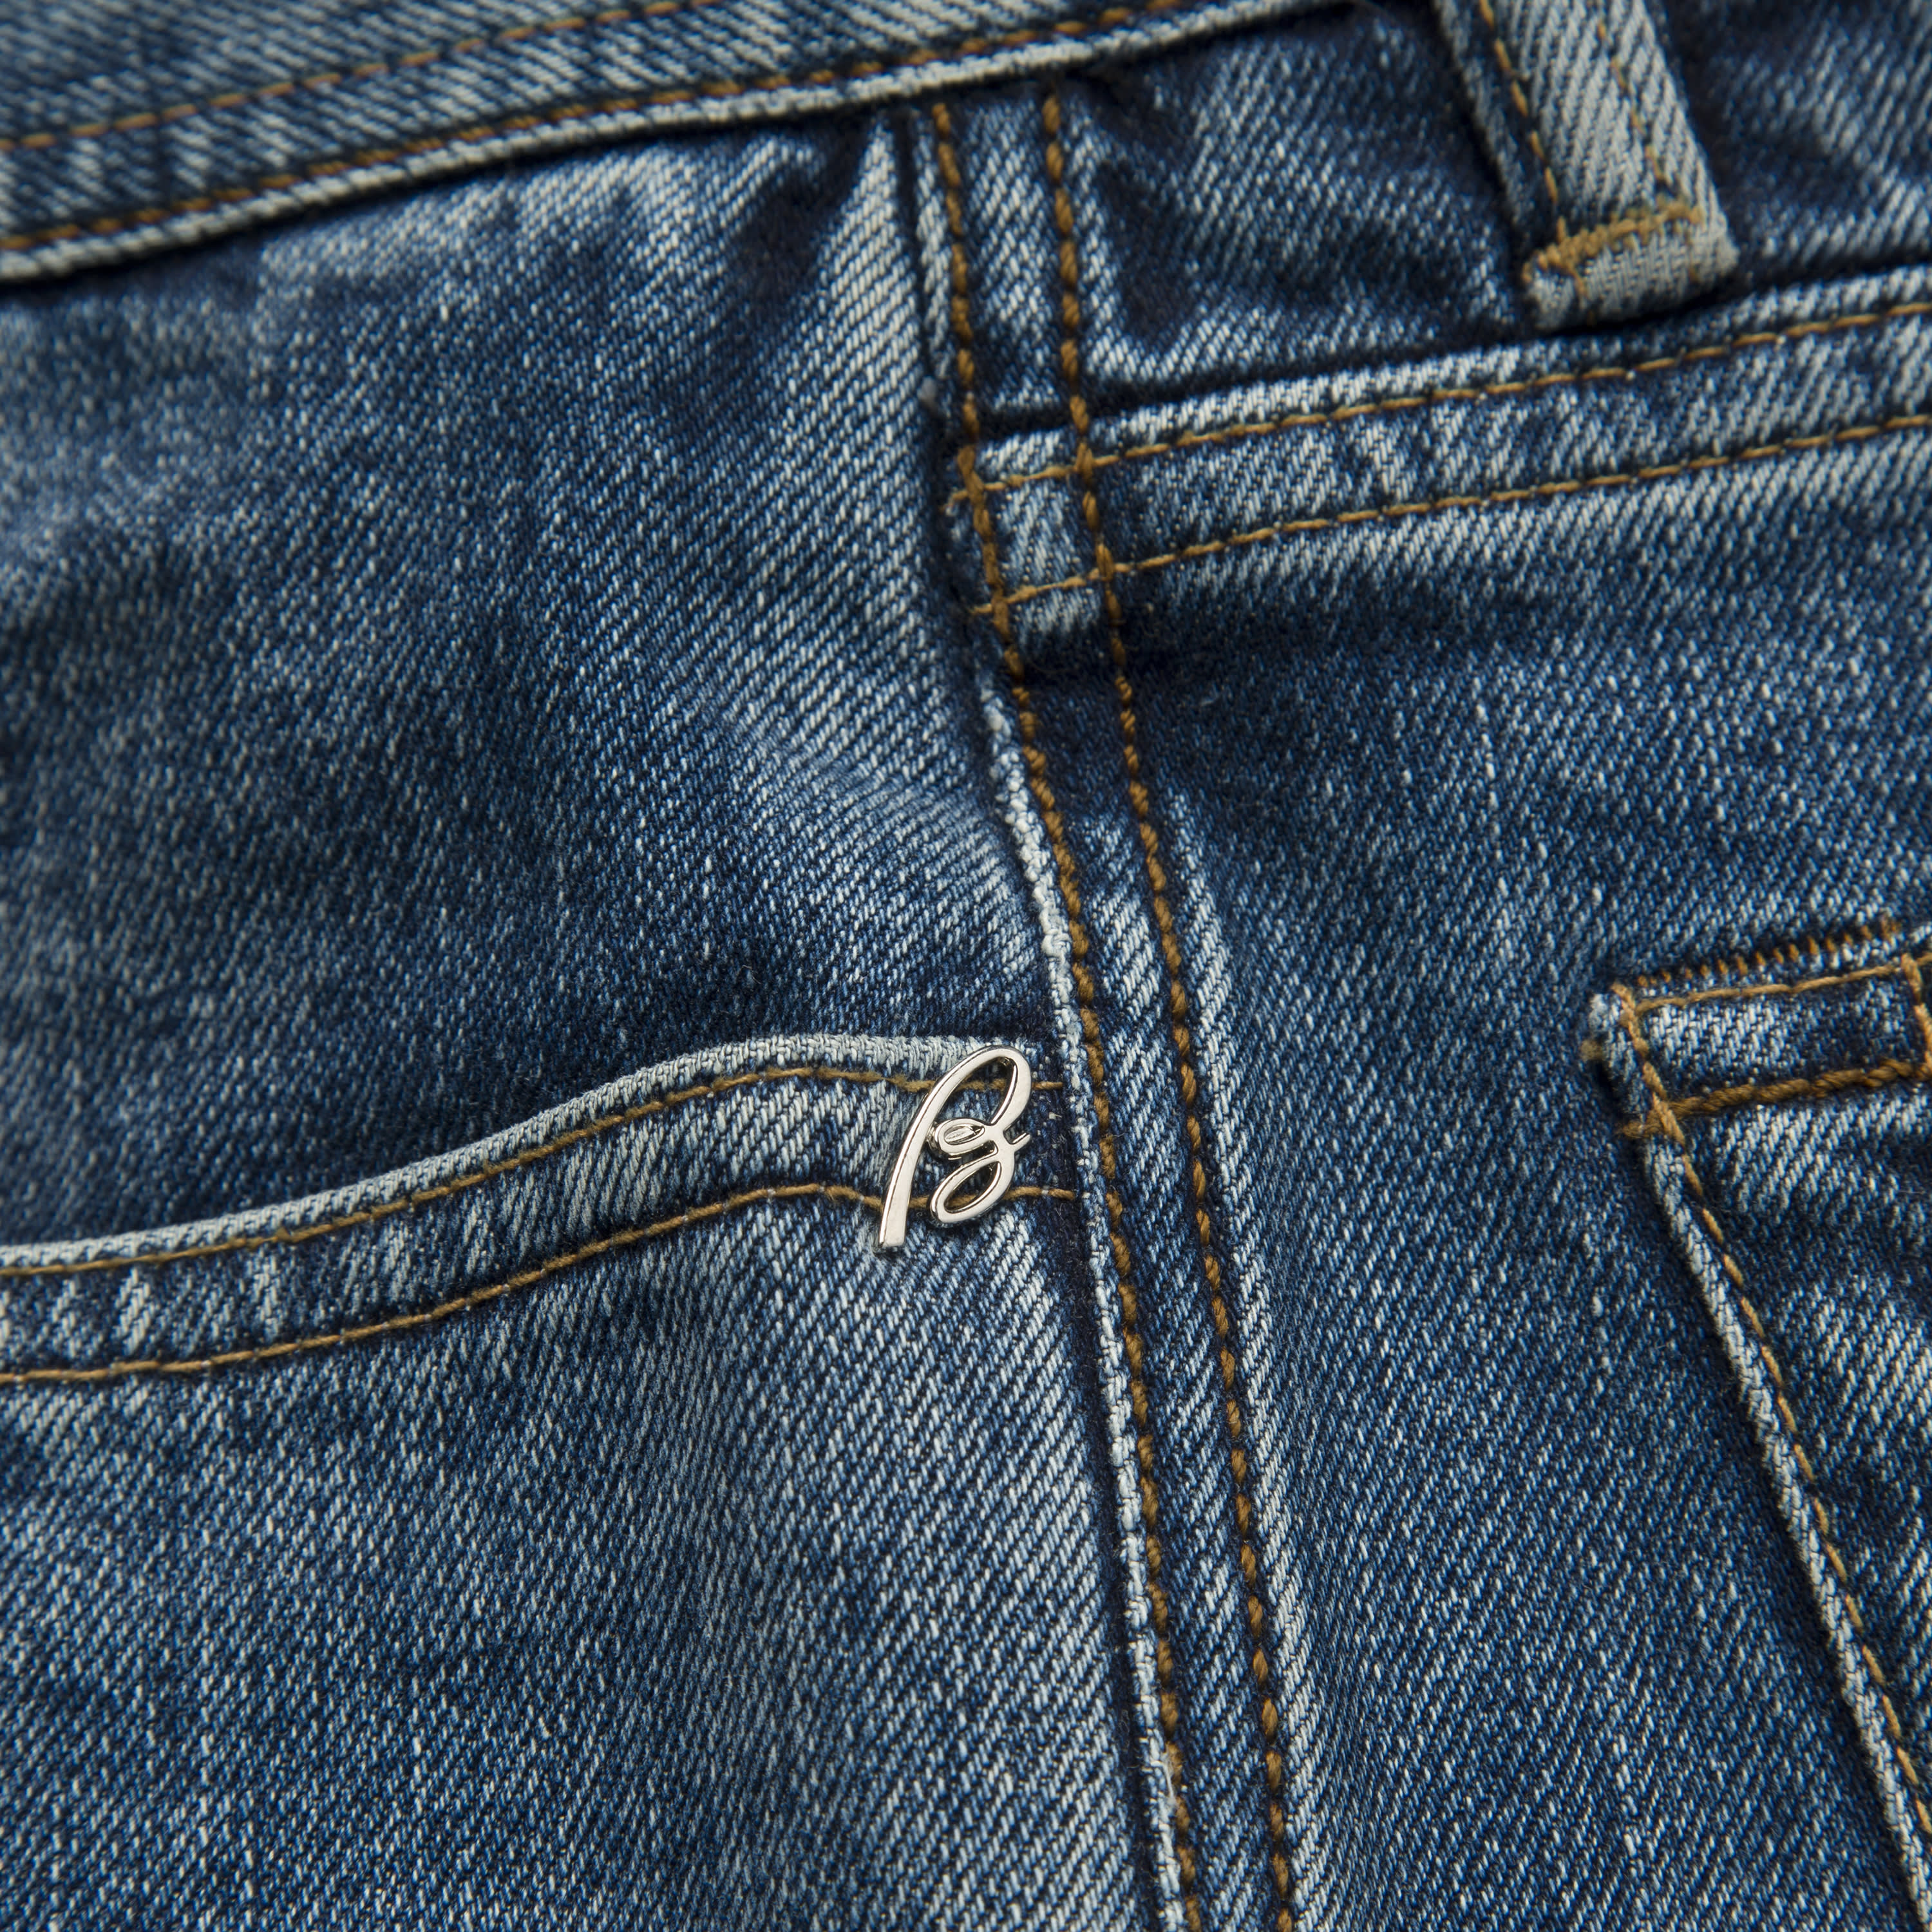 Mehrheit Shuttle Empfehlung japanese denim jeans Abgelaufen Segment ...